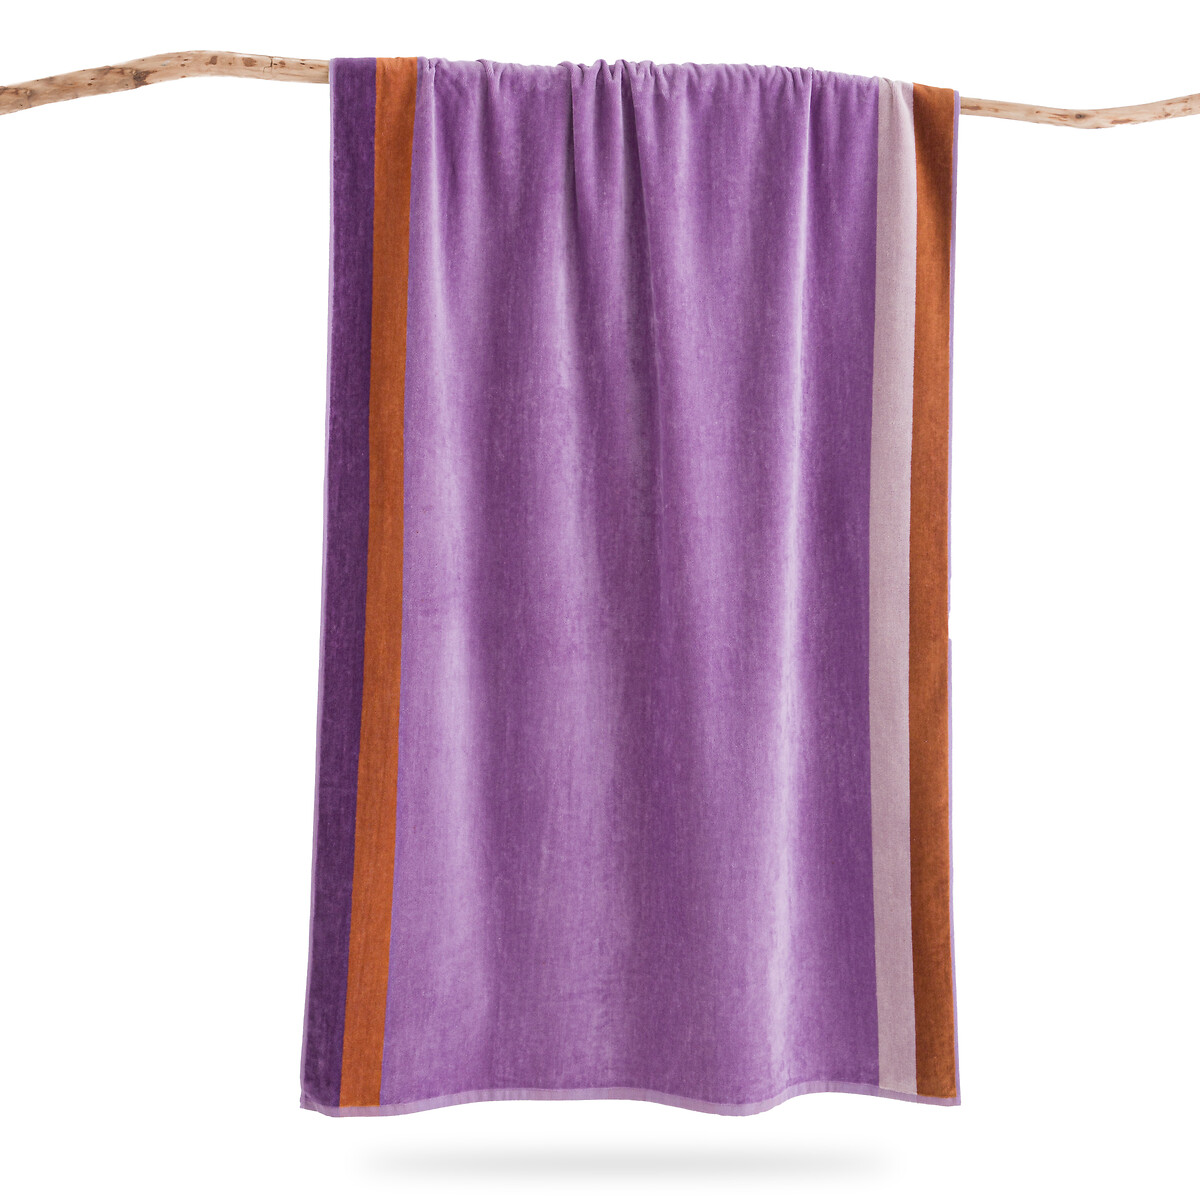 Полотенце пляжное махровое из велюра 420 г Valparaiso  единый размер фиолетовый LaRedoute - фото 1